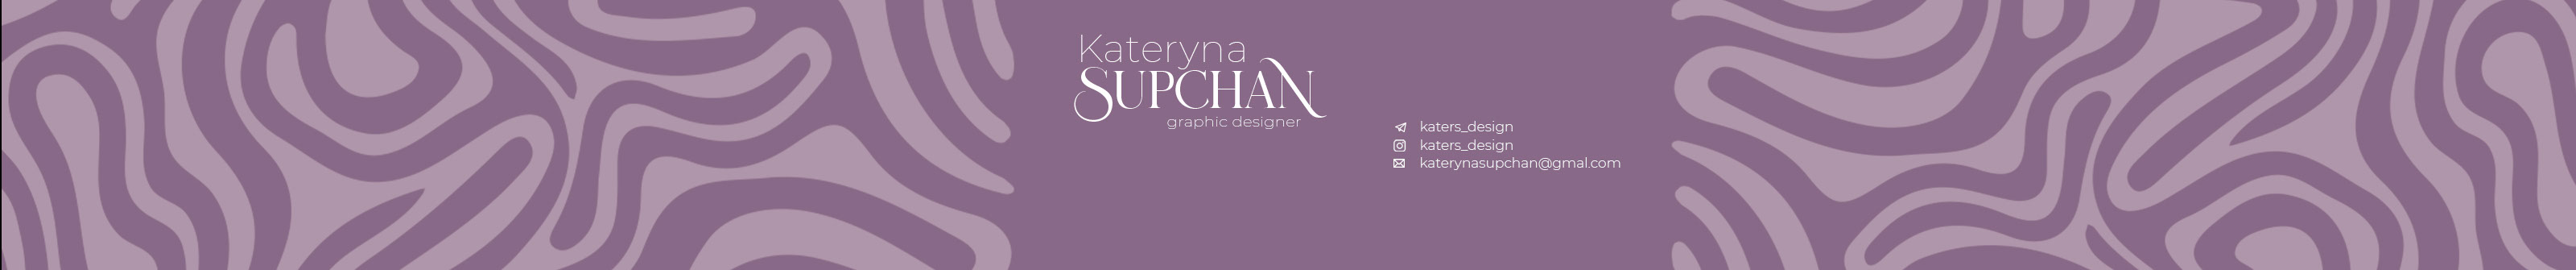 Banner de perfil de Kateryna Supchan